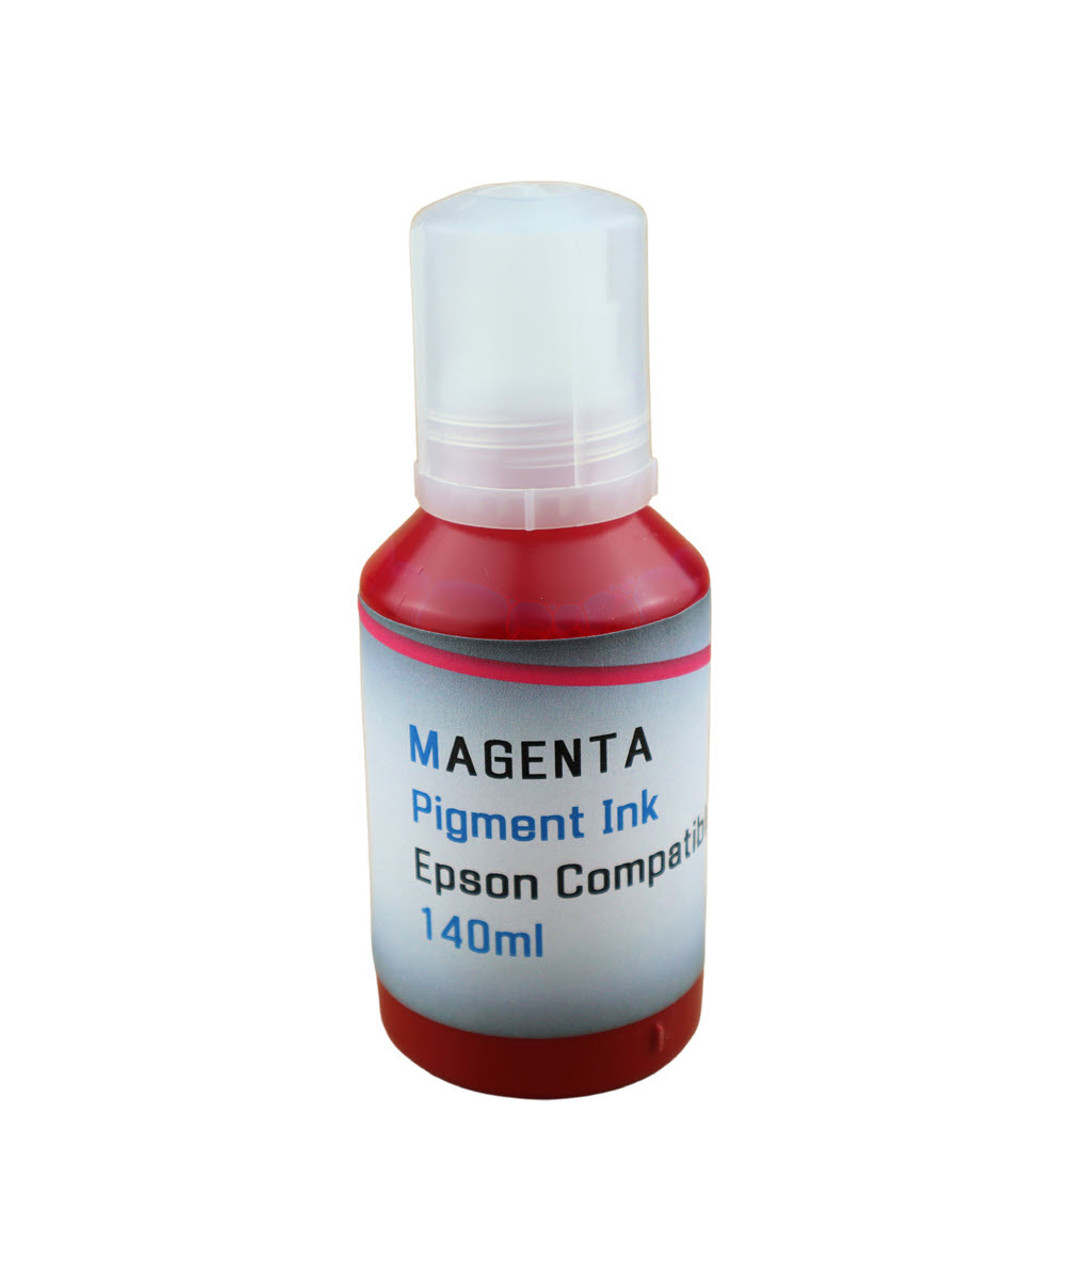 Magenta Pigment Ink 140ml Bottle for Epson EcoTank ET-5800 ET-5850 ET-5880 Printer
